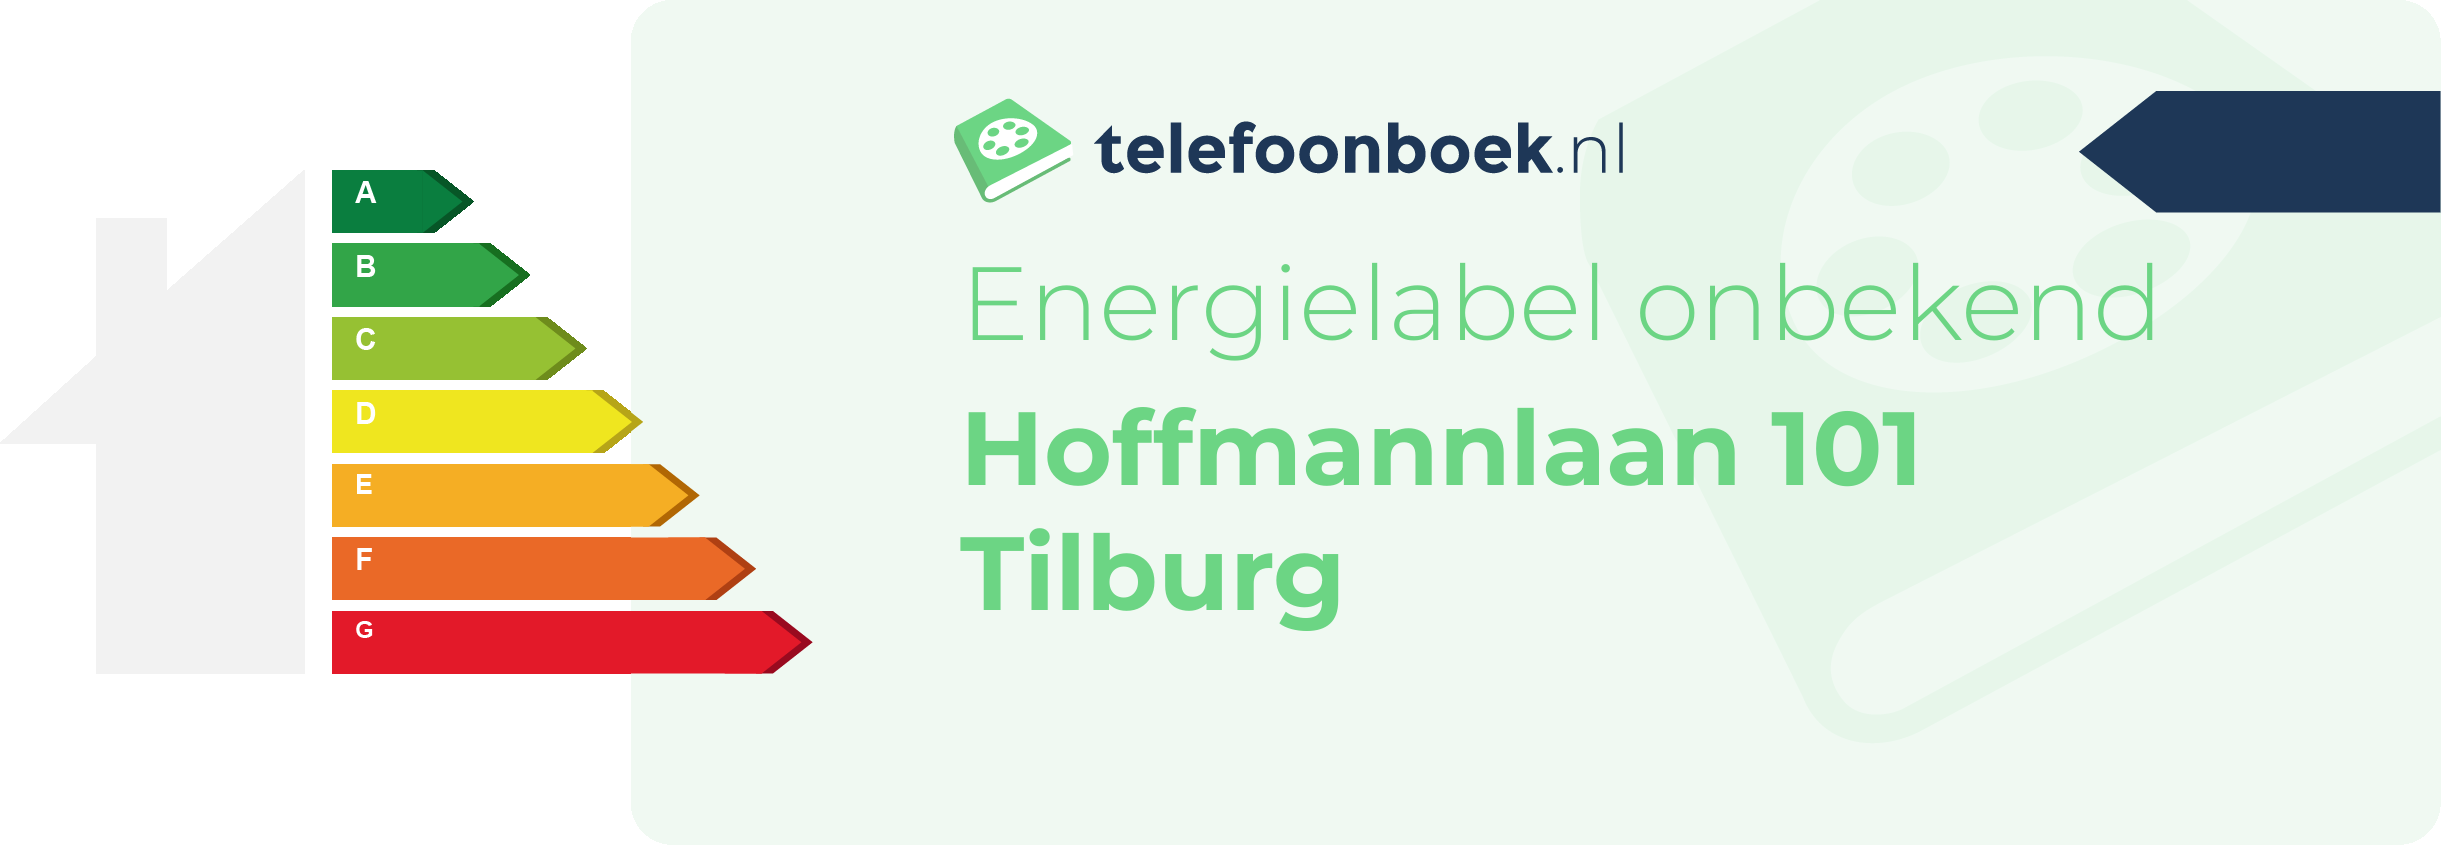 Energielabel Hoffmannlaan 101 Tilburg